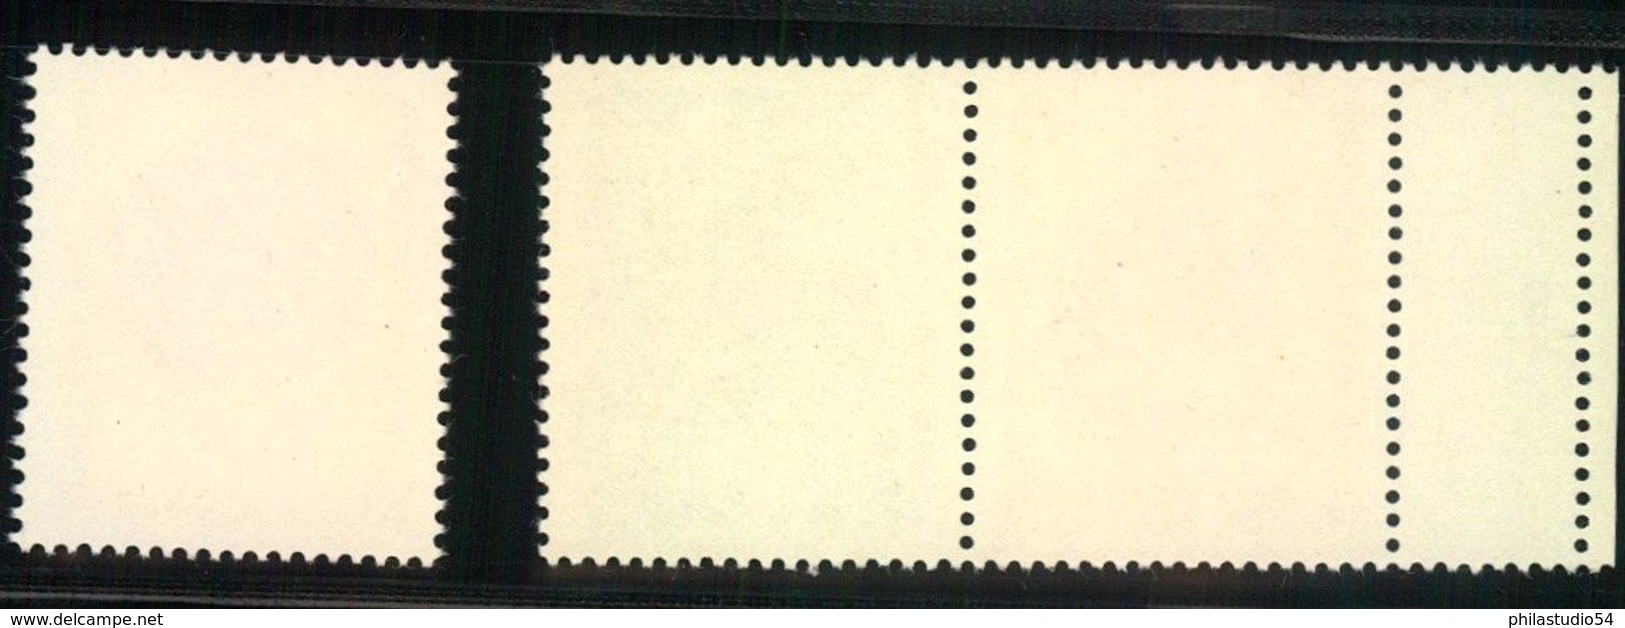 1969, Lausitzer Volkskunst, Zdr 10 Und 50 Pfg. Postfrisch Mit Leefeld Links Und 20 Pfg.Einzelmarke - Ongebruikt